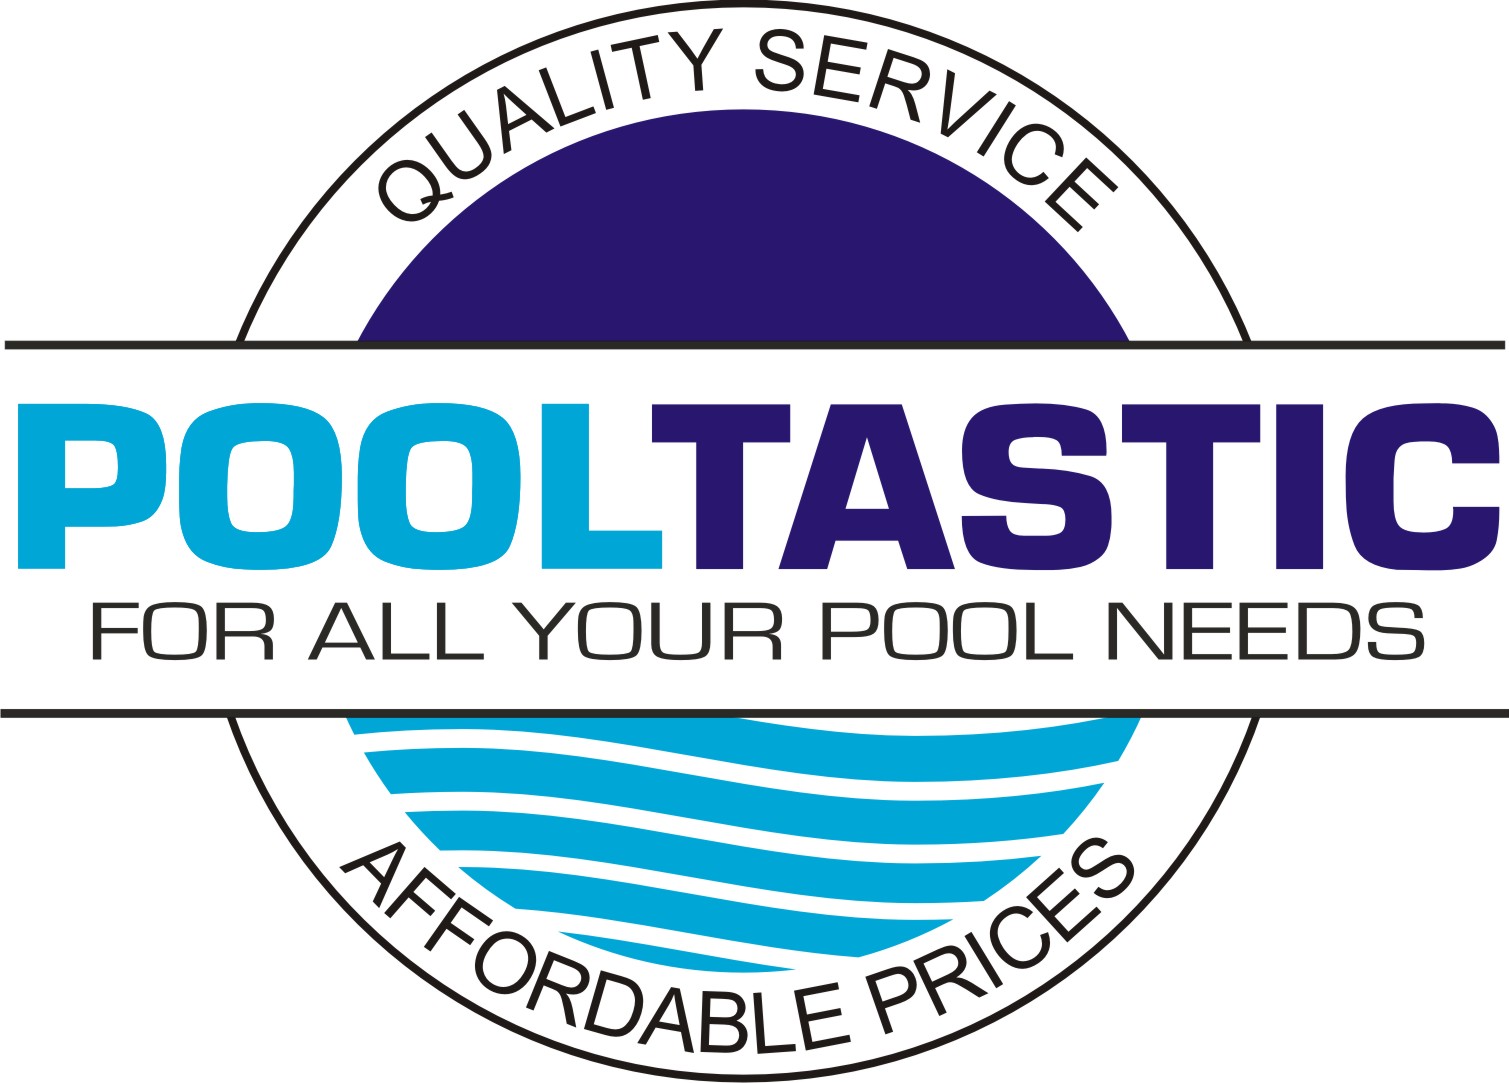 PoolTastic Pool & Spa